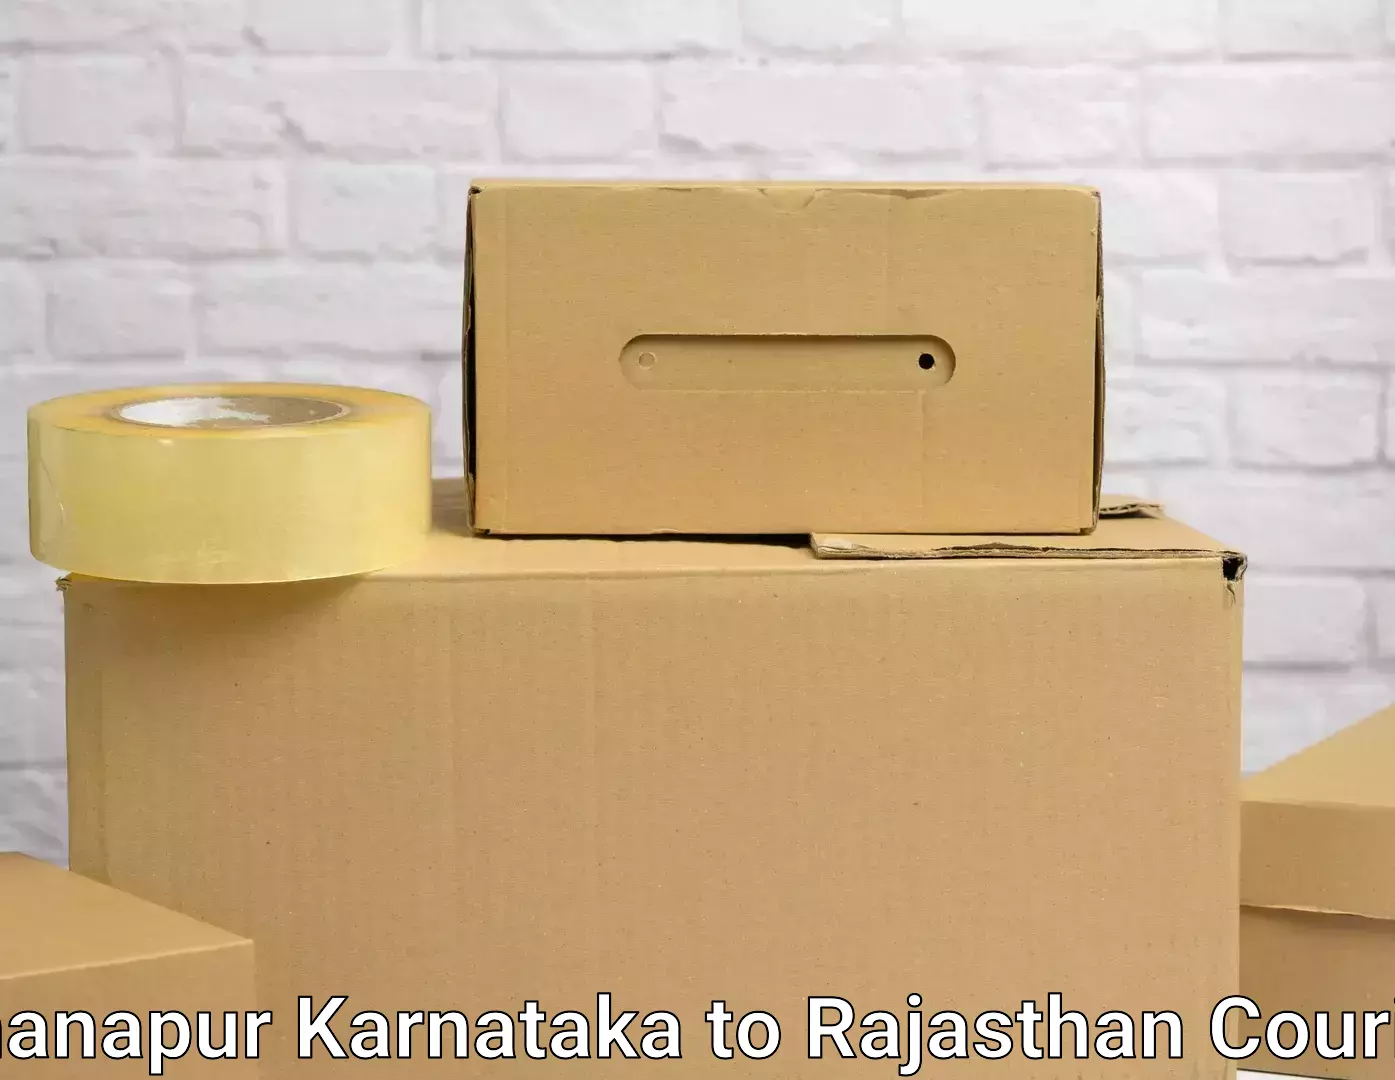 Budget-friendly moving services Khanapur Karnataka to Jodhpur